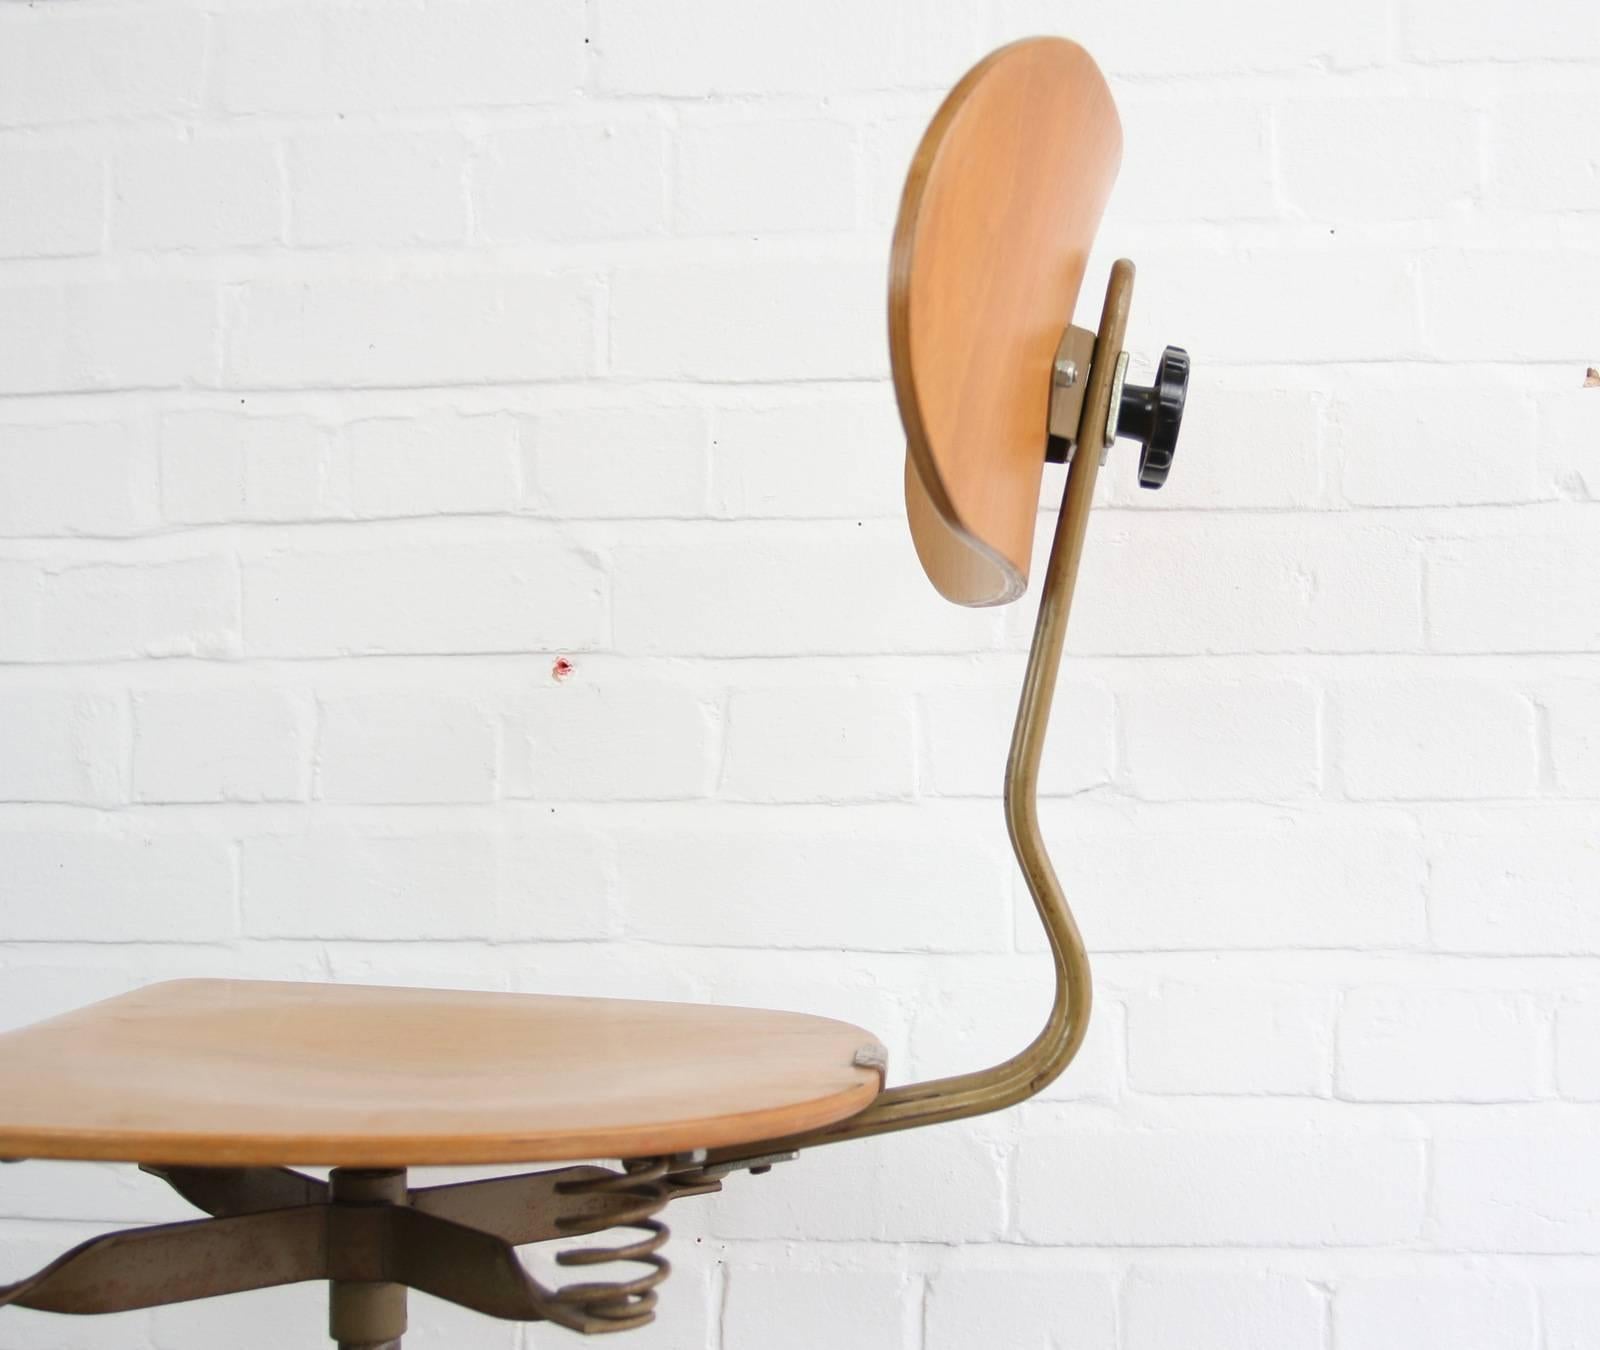 Mid-20th Century Ergonomic Sprung Chair by Polstergleich, circa 1950s